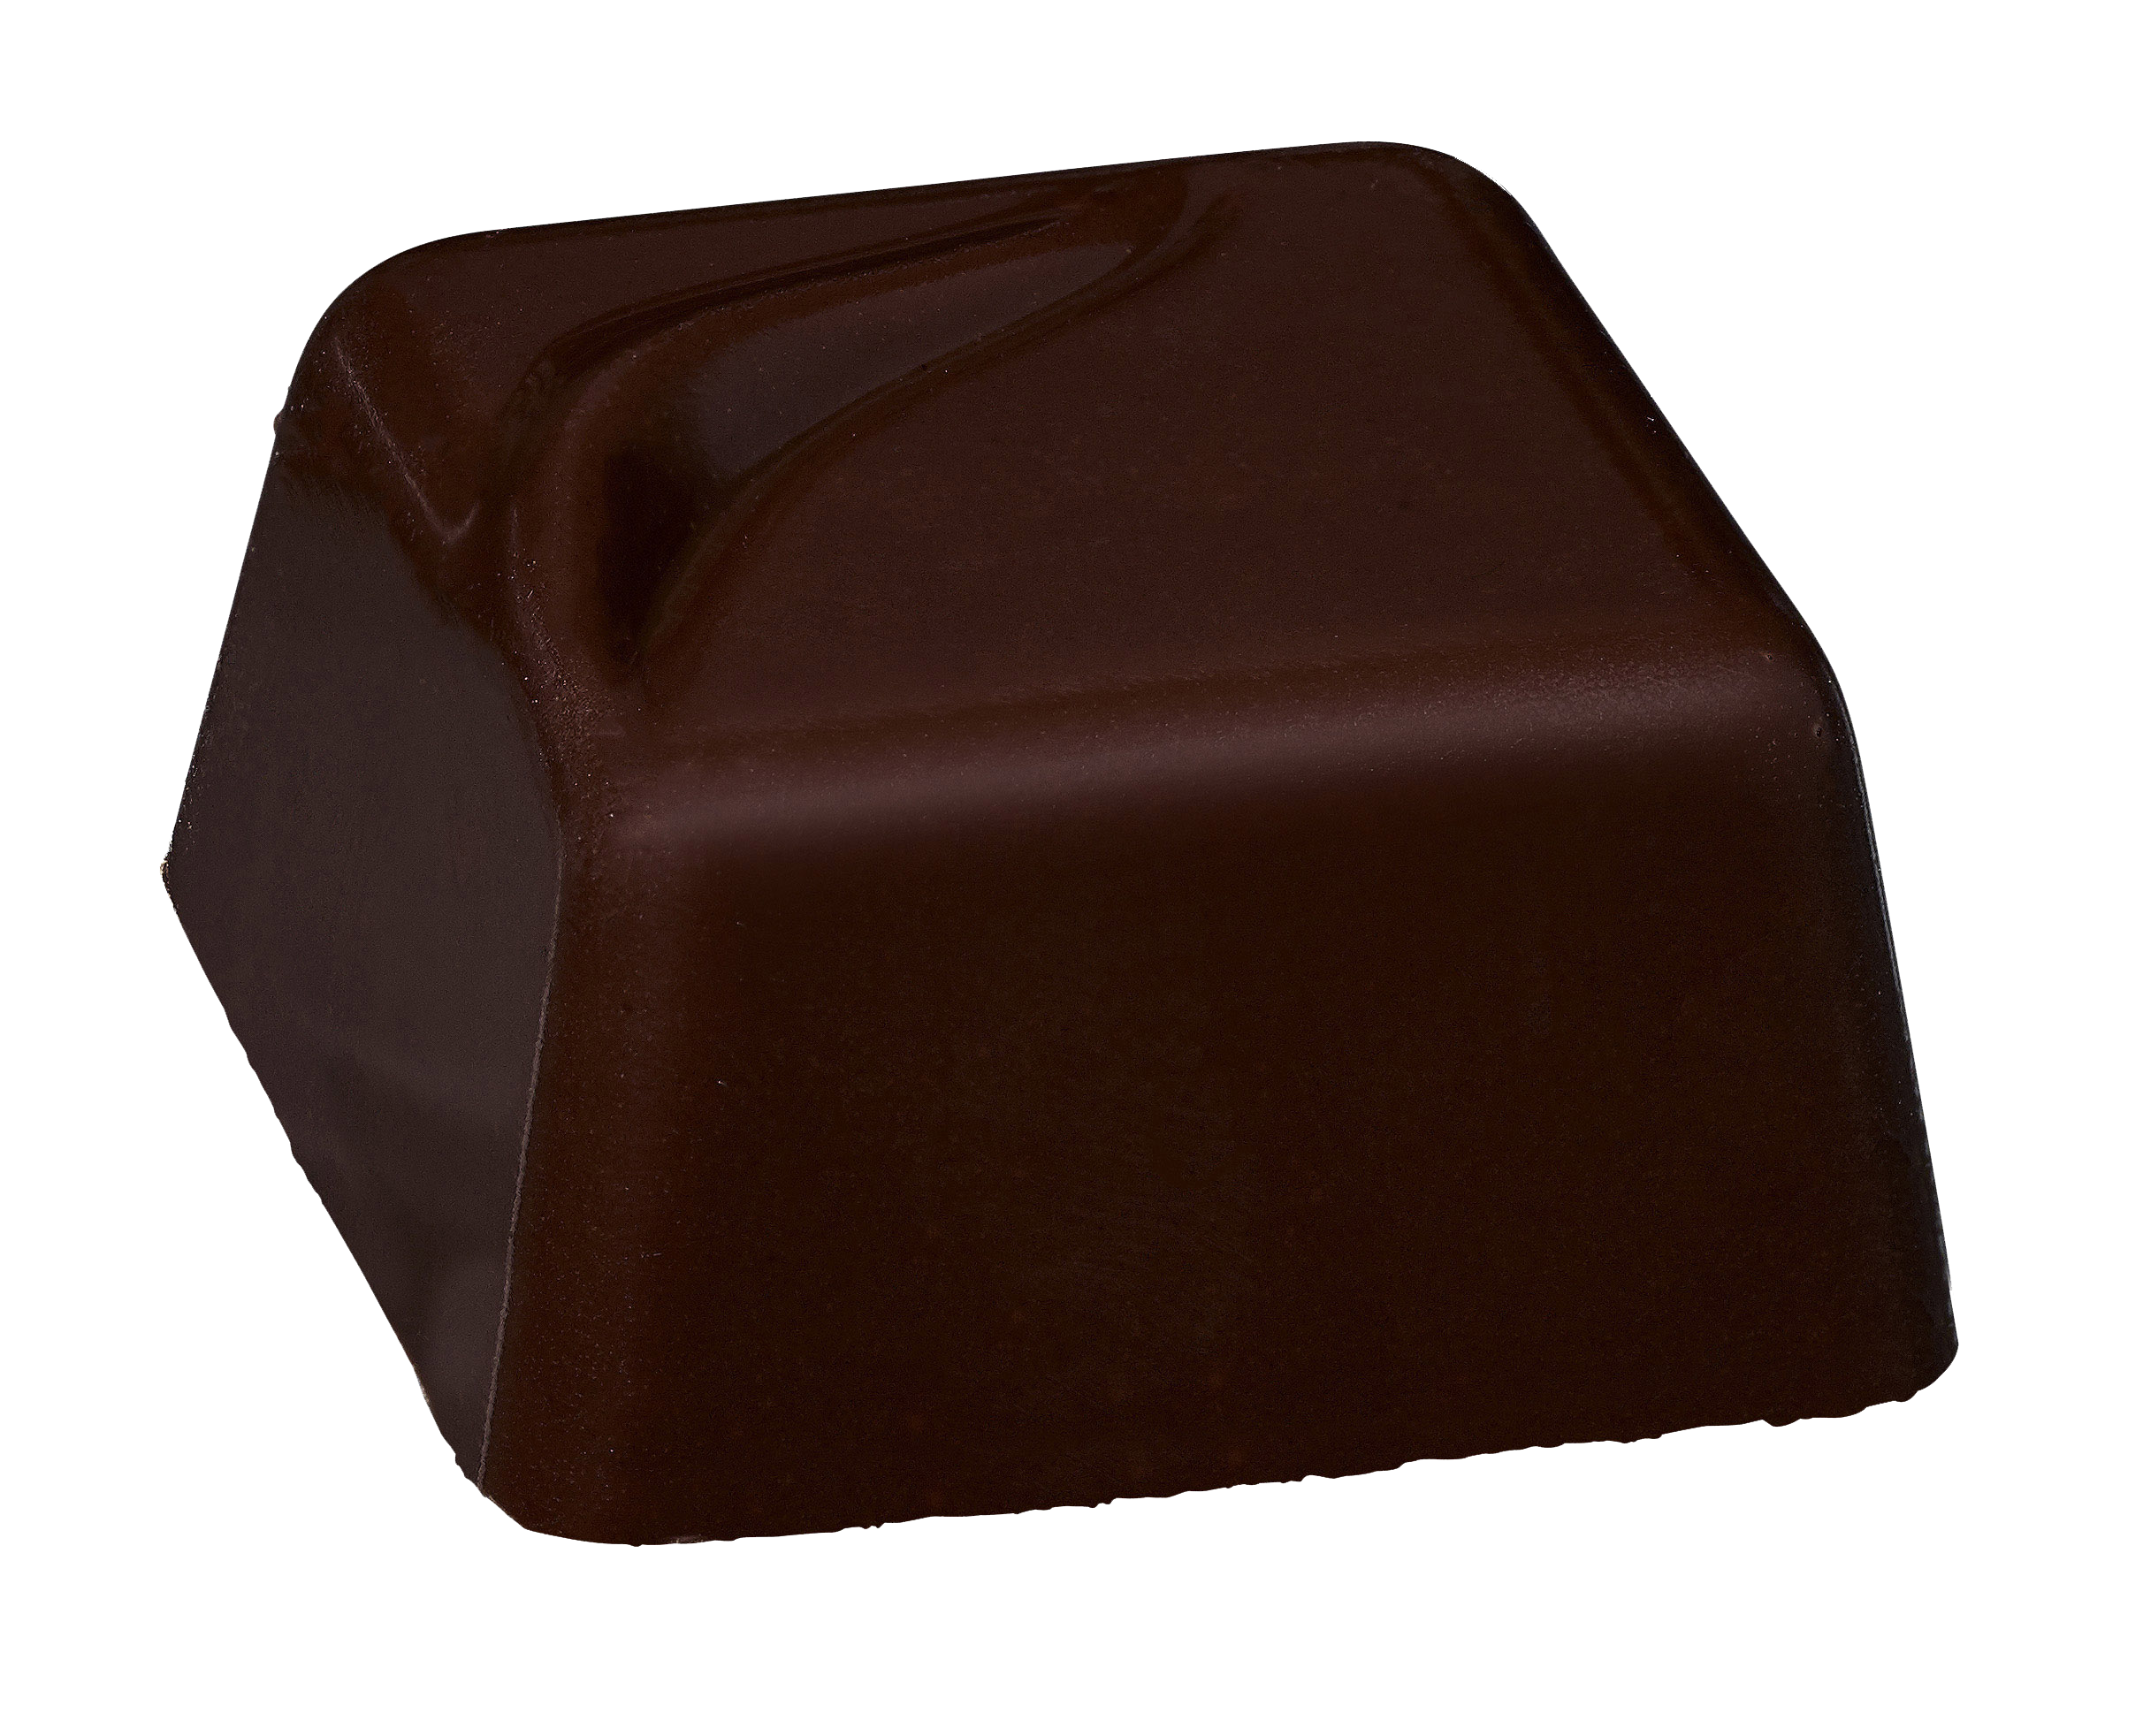 Belledonne Amandel praliné(omhuld met pure chocolade 74%) bio 1kg - 000650